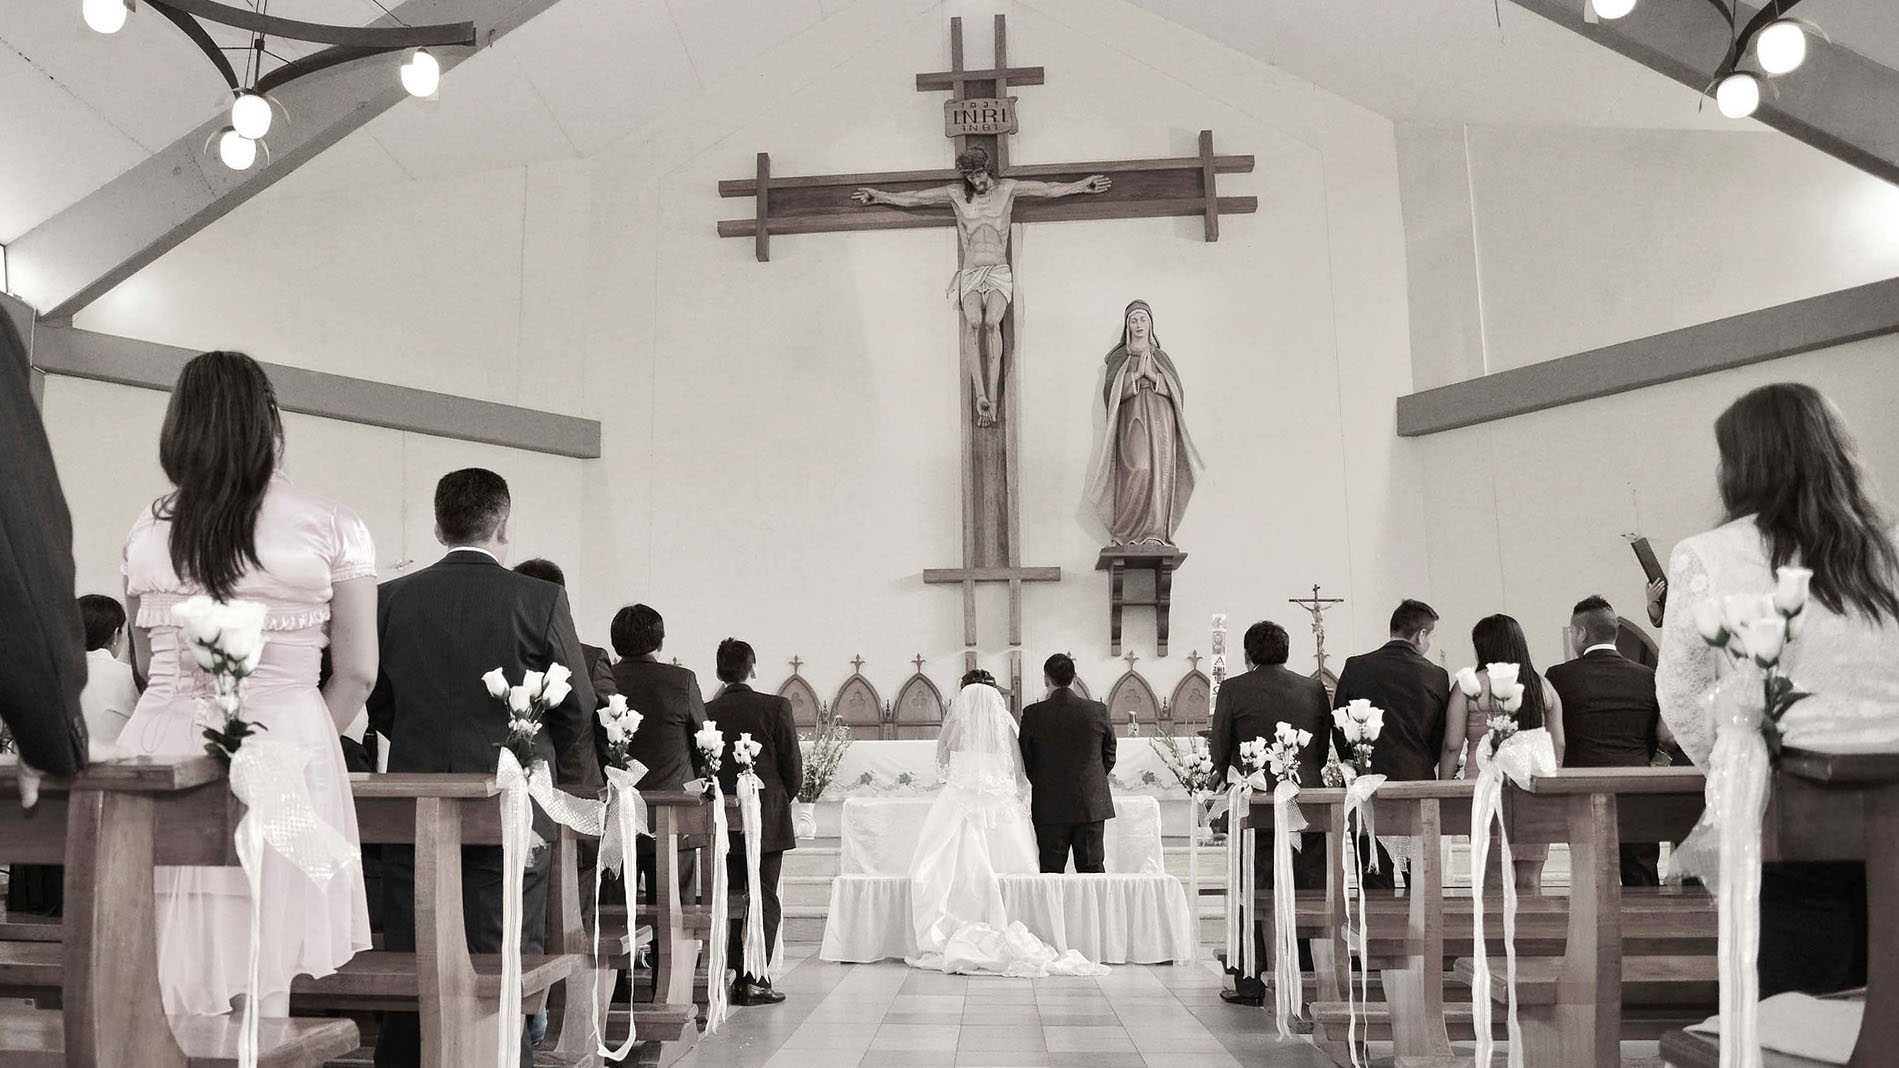 Le pape concède de nouvelles permissions pour les mariages des fidèles de la Fraternité Saint-Pie-X. (photo prétexte: Pixabay/DDP)